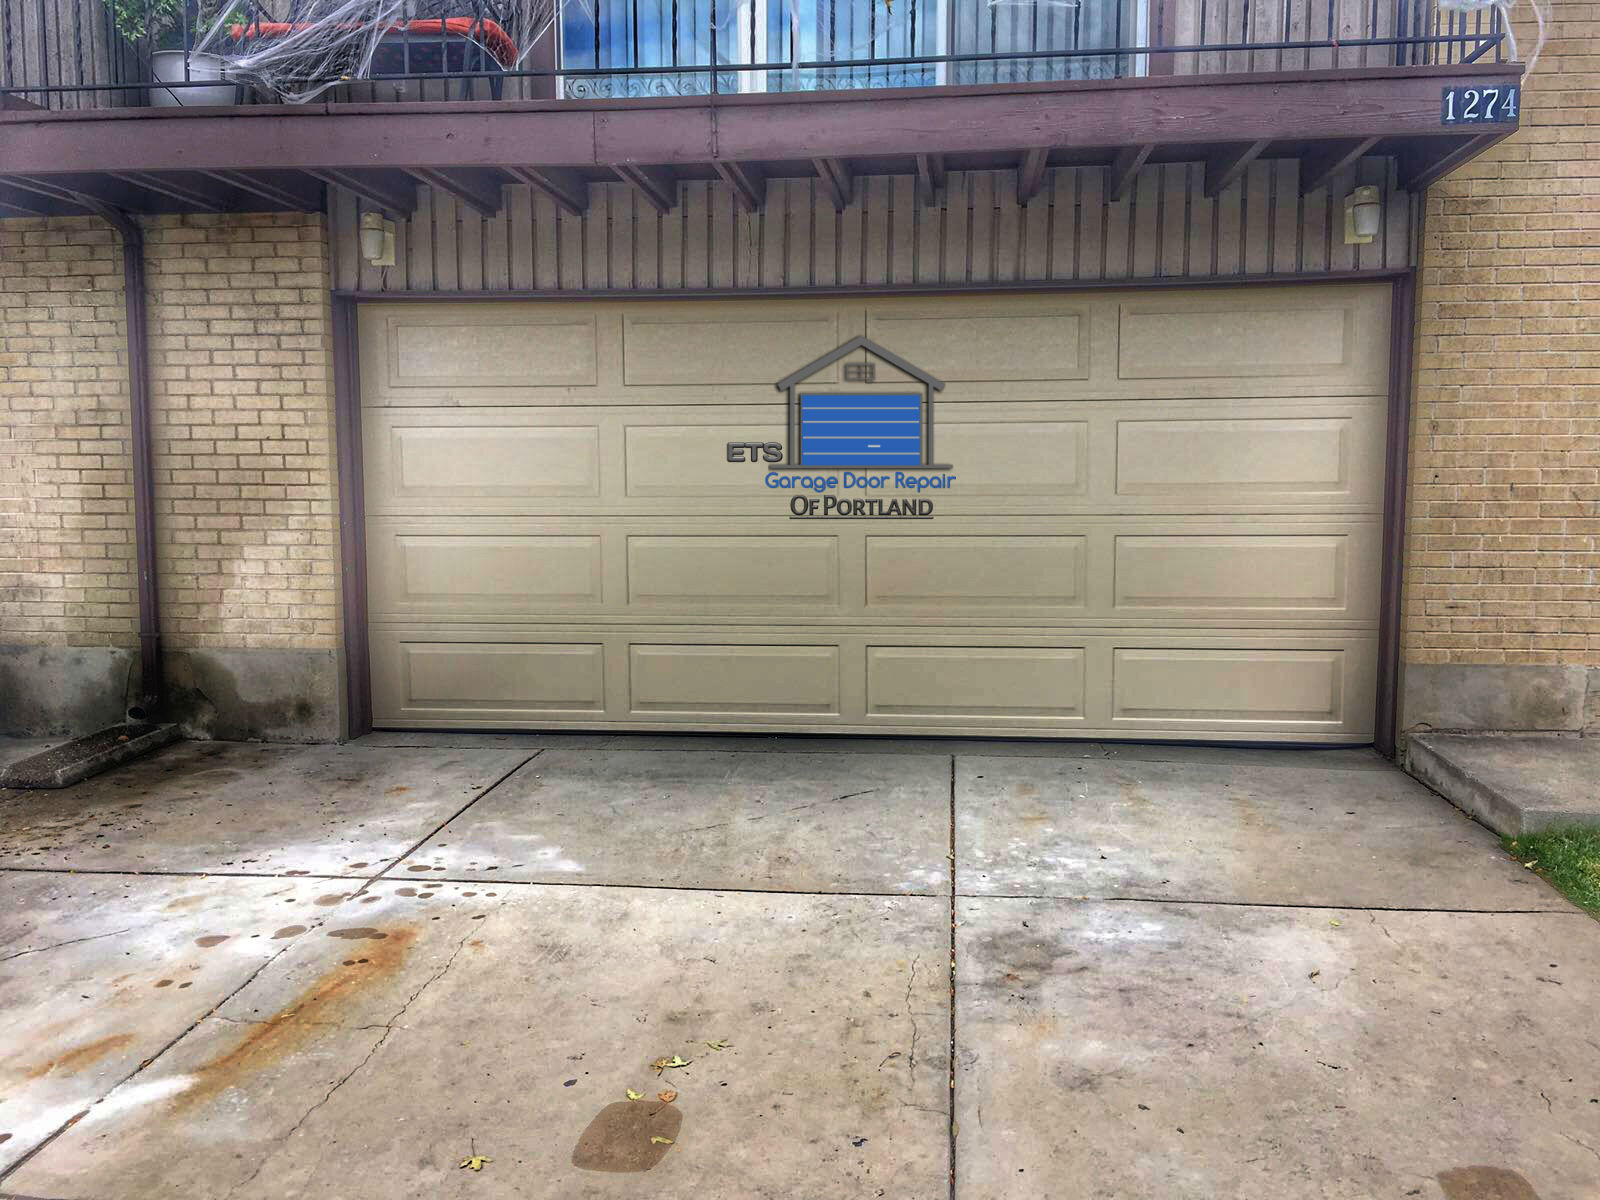 Image Name ETS Garage Door Repair Of Eugene- Garage Door Repair & Installation Services18